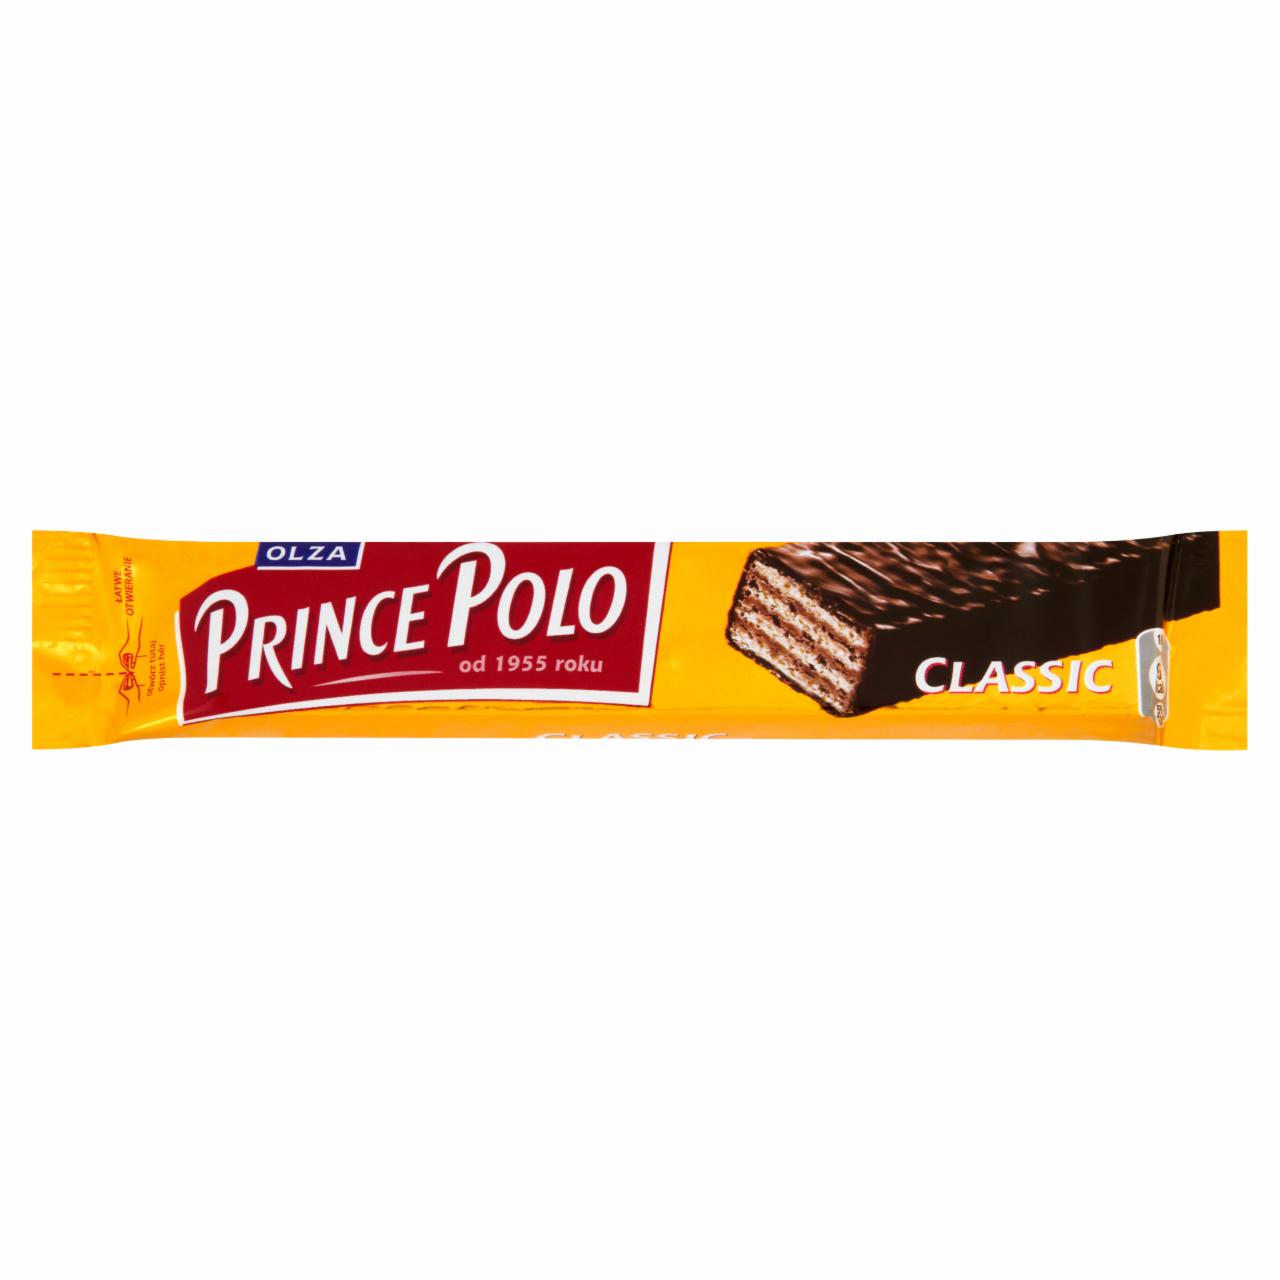 Zdjęcia - Olza Prince Polo Classic Kruchy wafelek z kremem kakaowym oblany czekoladą 18 g